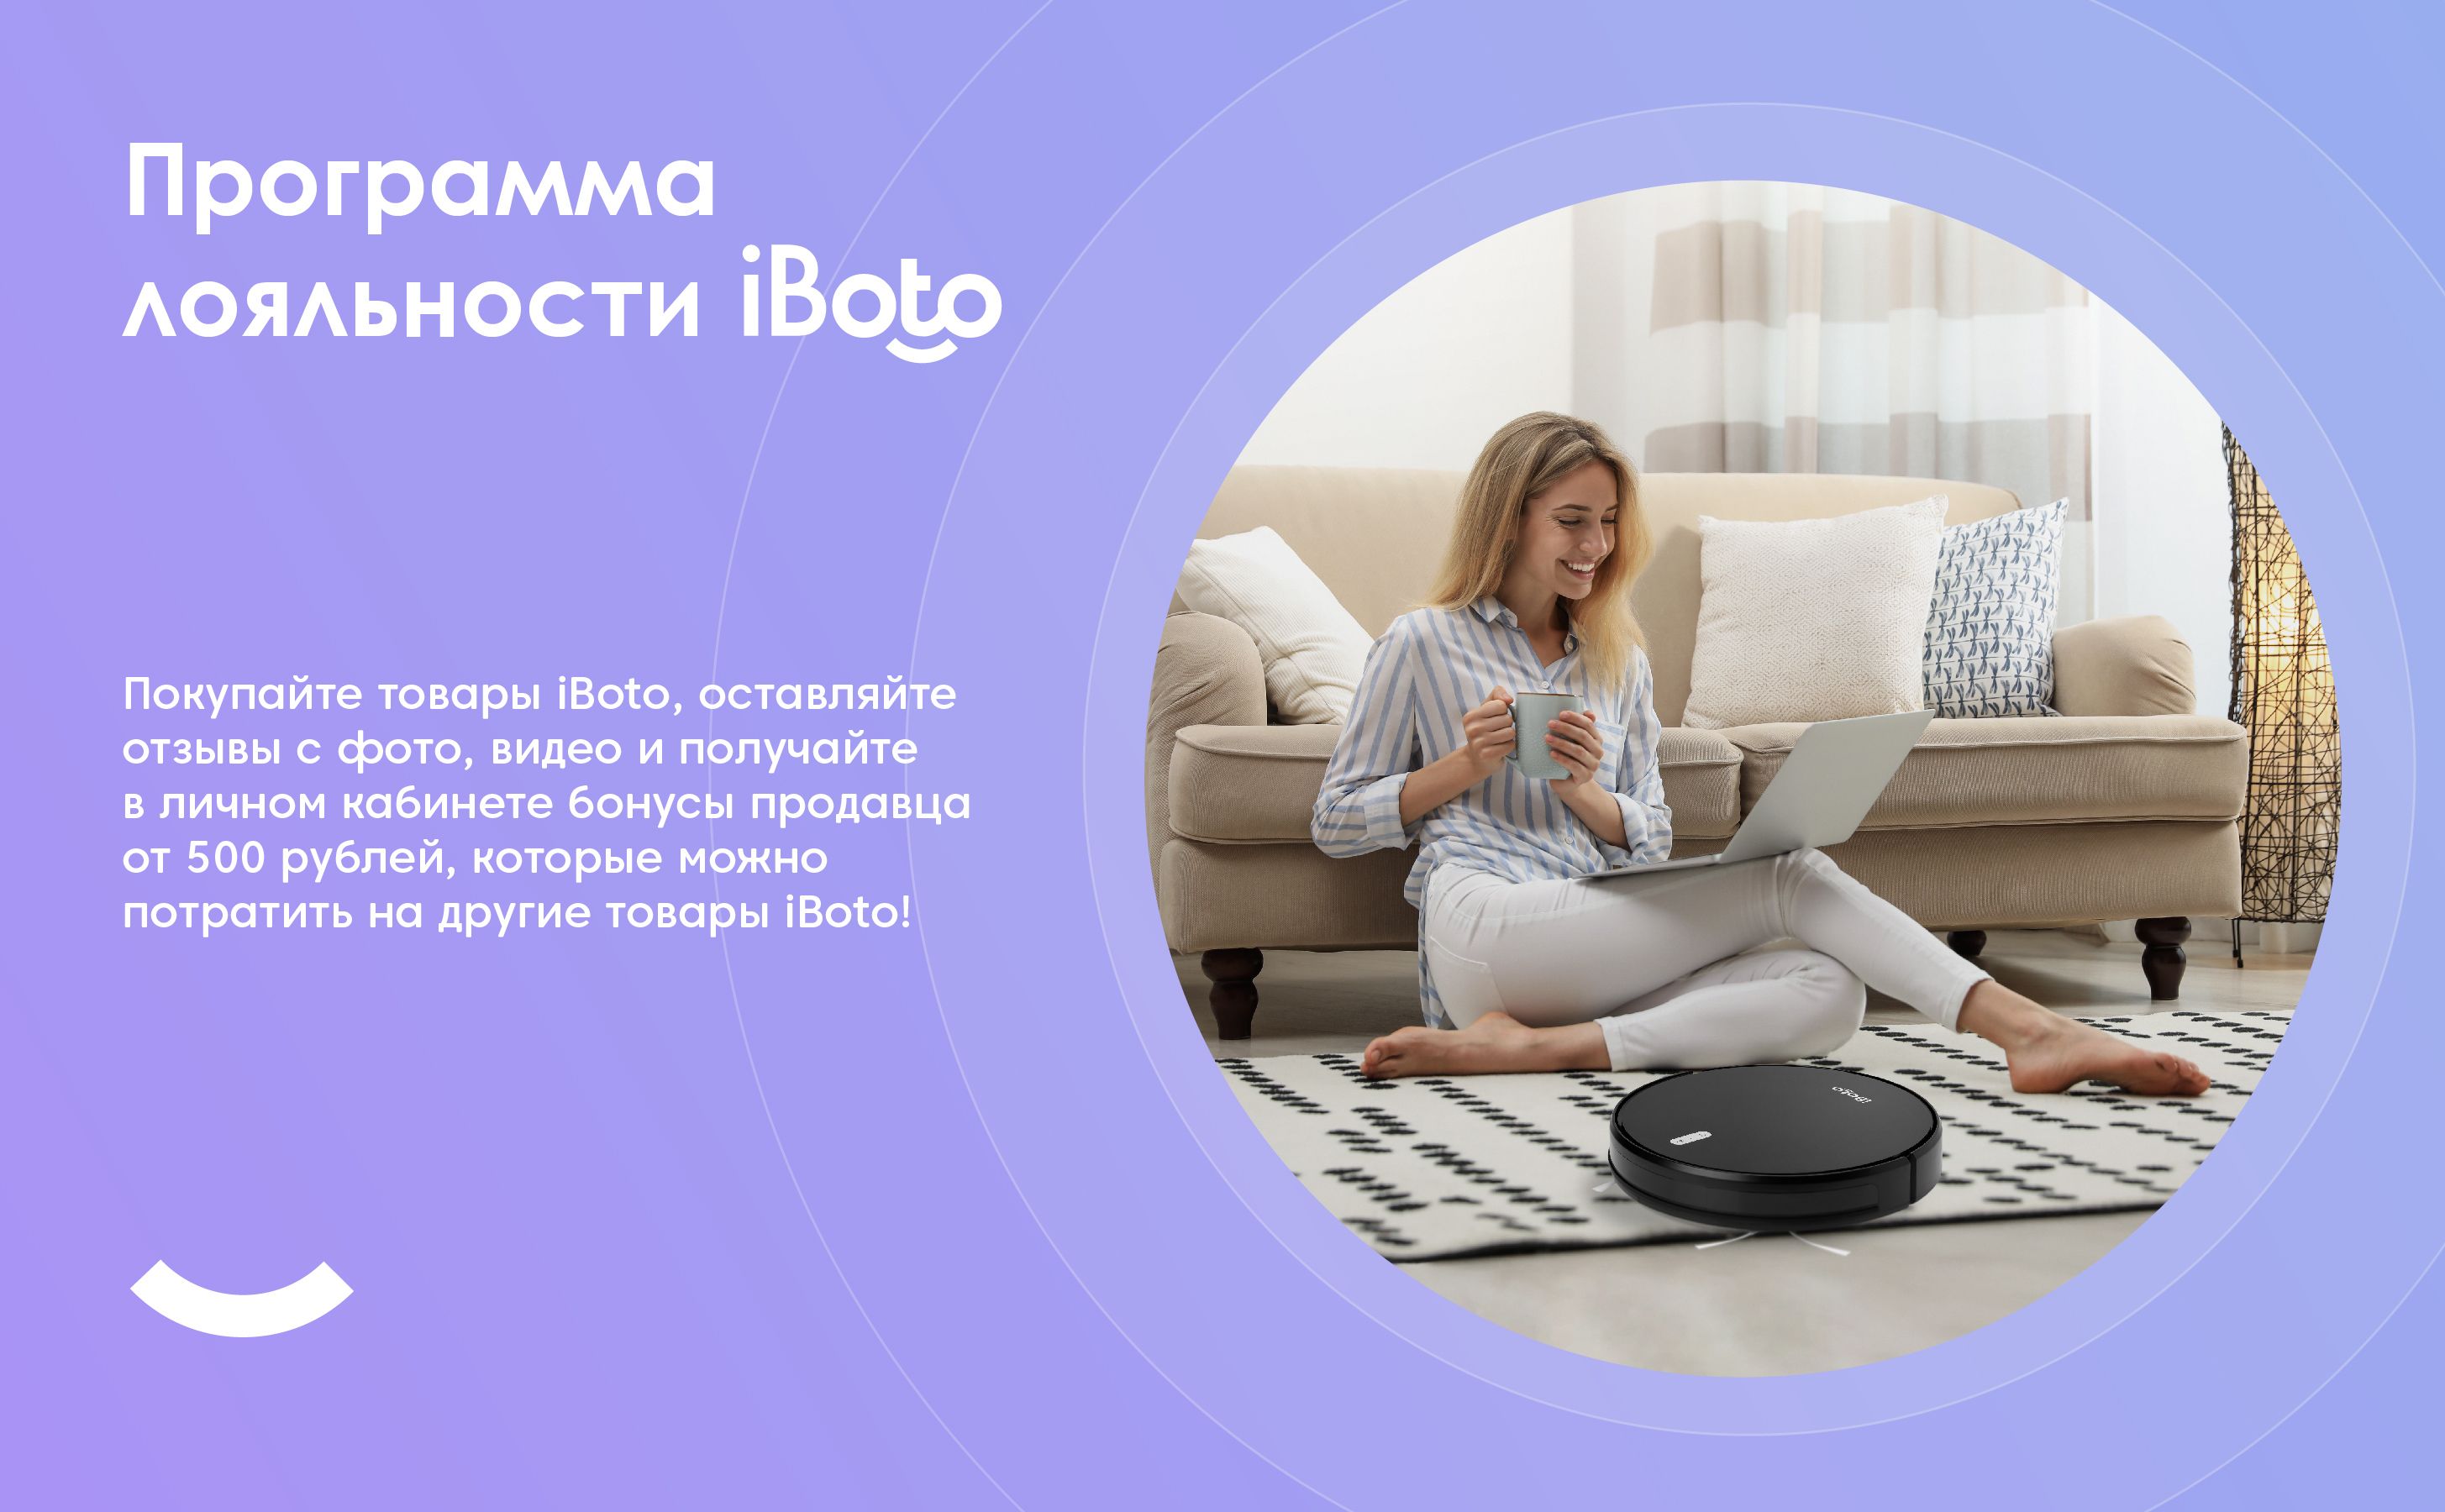 Программа лояльности iBoto. Покупайте товары iBoto, оставляйте отзывы с фото, видео и получайте в личном кабинете бонусы продавца от 500 рублей, которые можно потратить на другие товары iBoto!